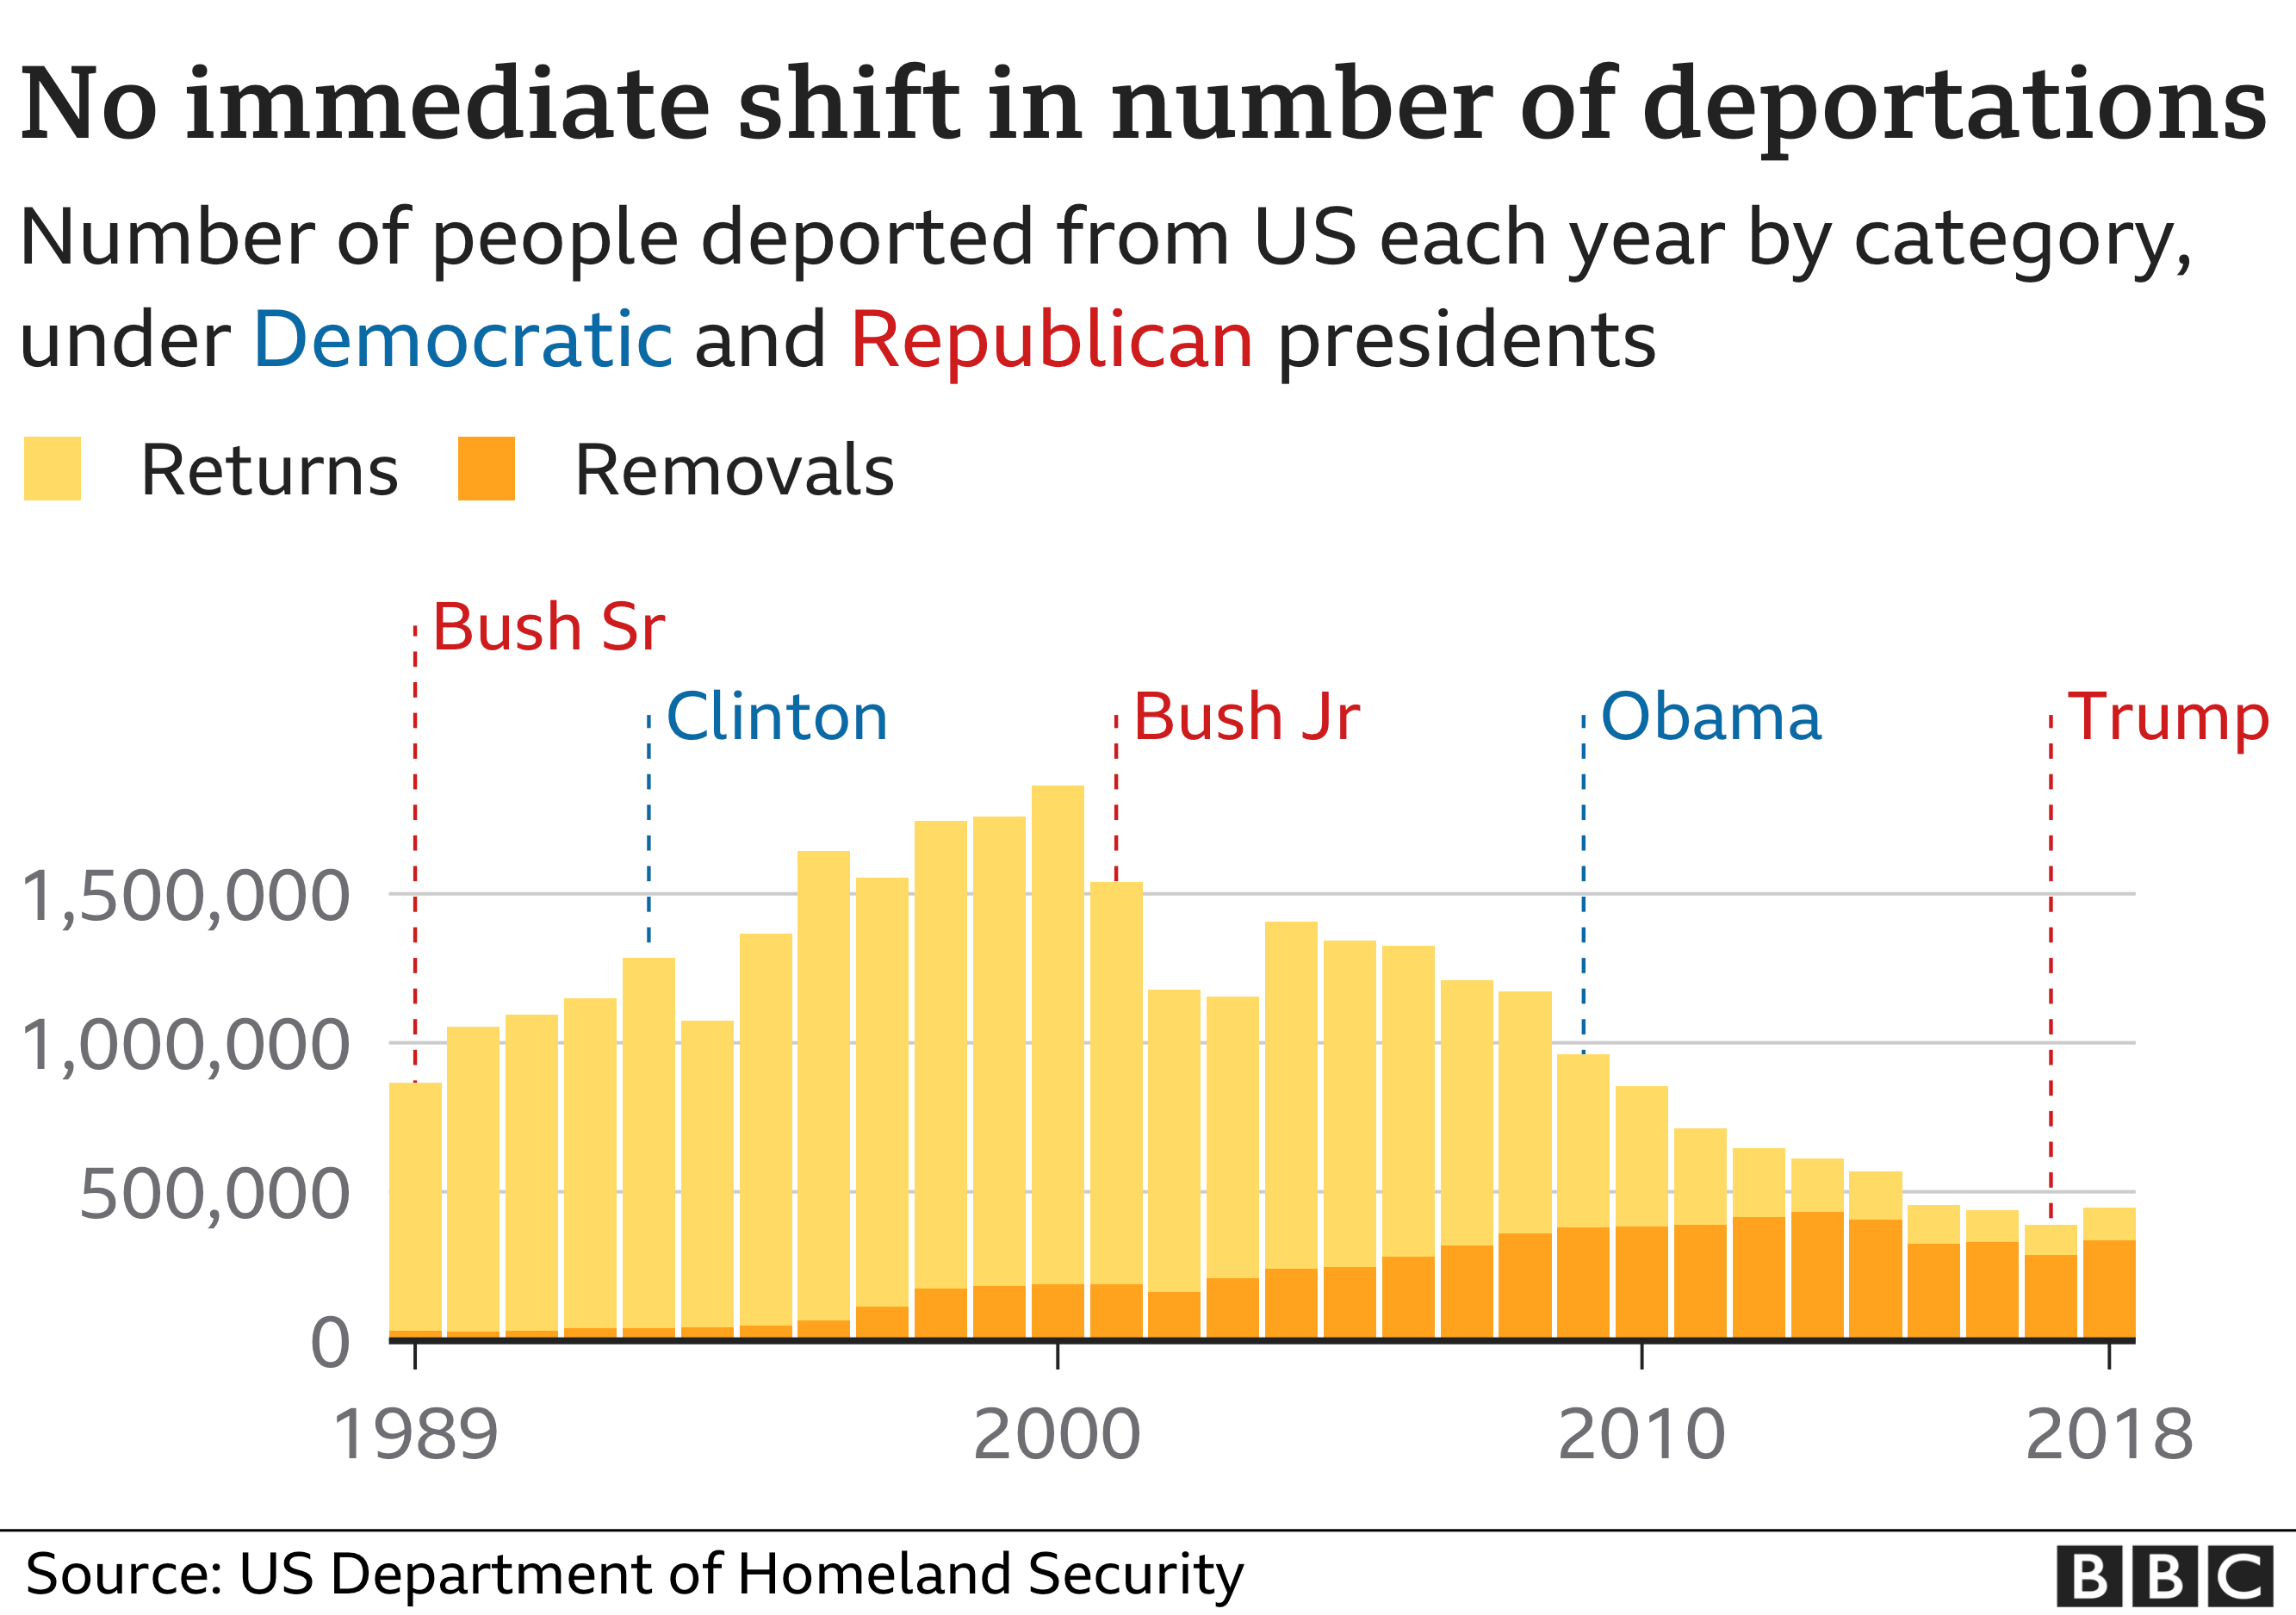 Никакого немедленного изменения количества депортаций